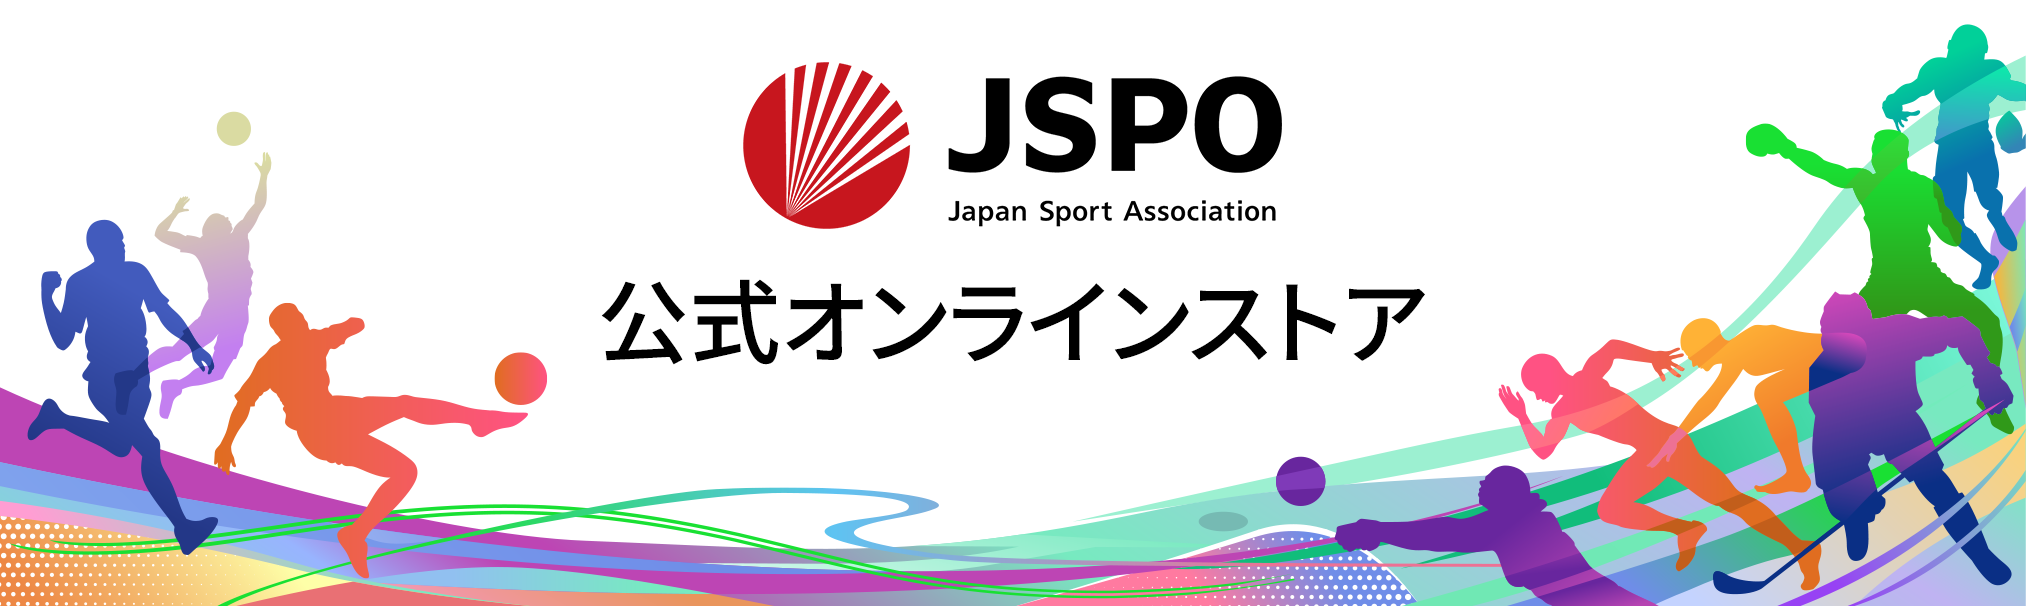 JSPOオンラインショップへのリンク画像